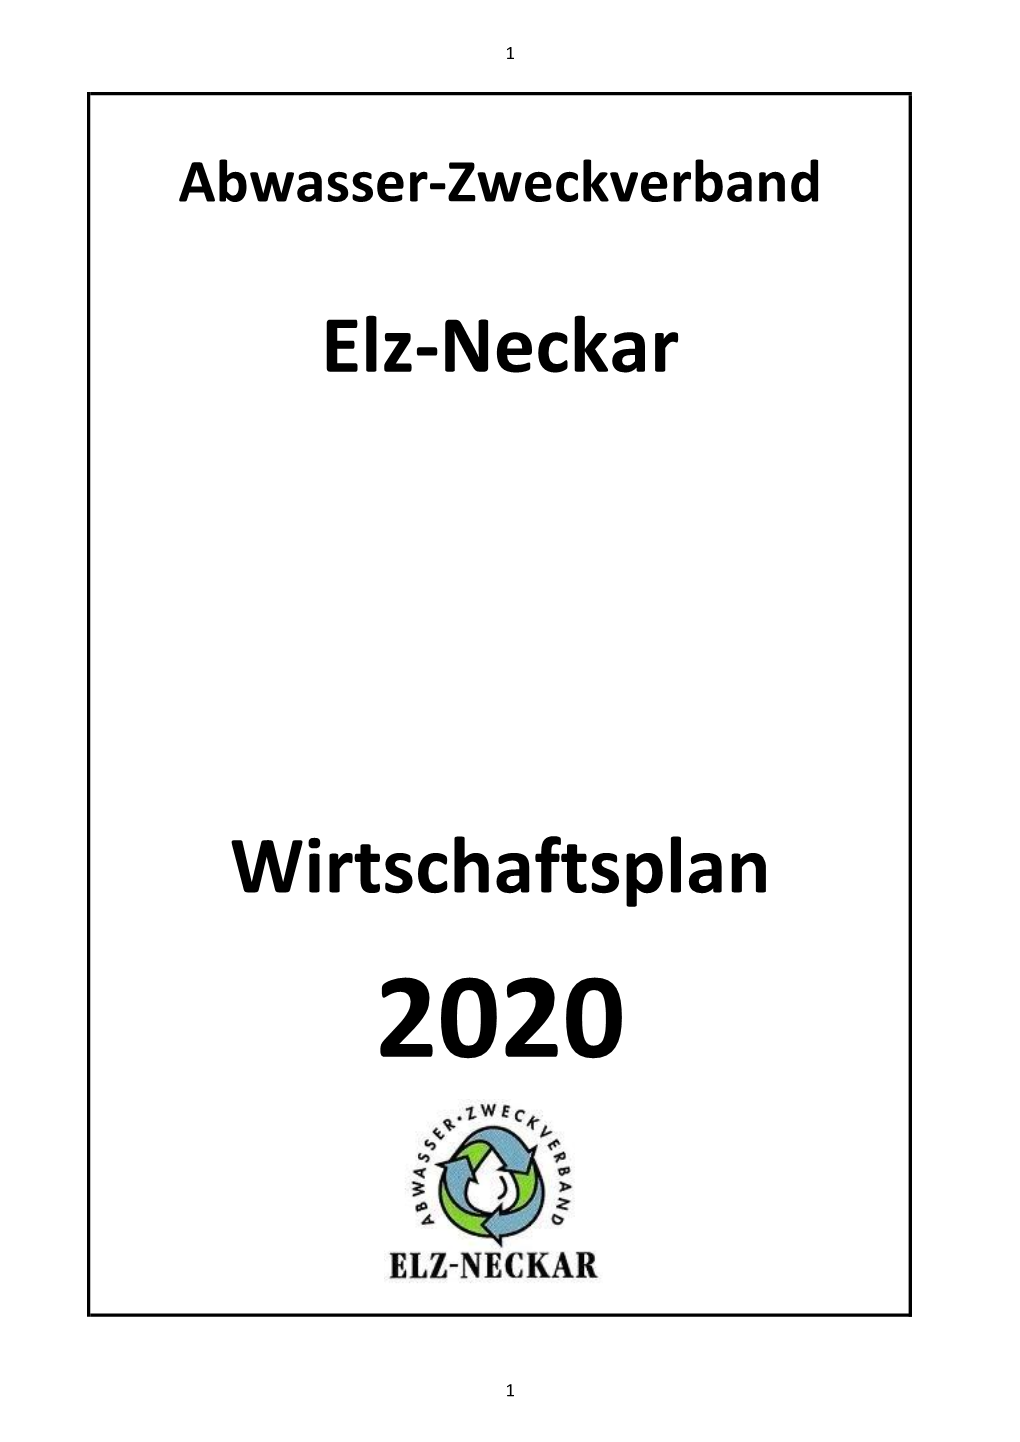 Abwasser-Zweckverband Elz-Neckar Wirtschaftsplan 2020